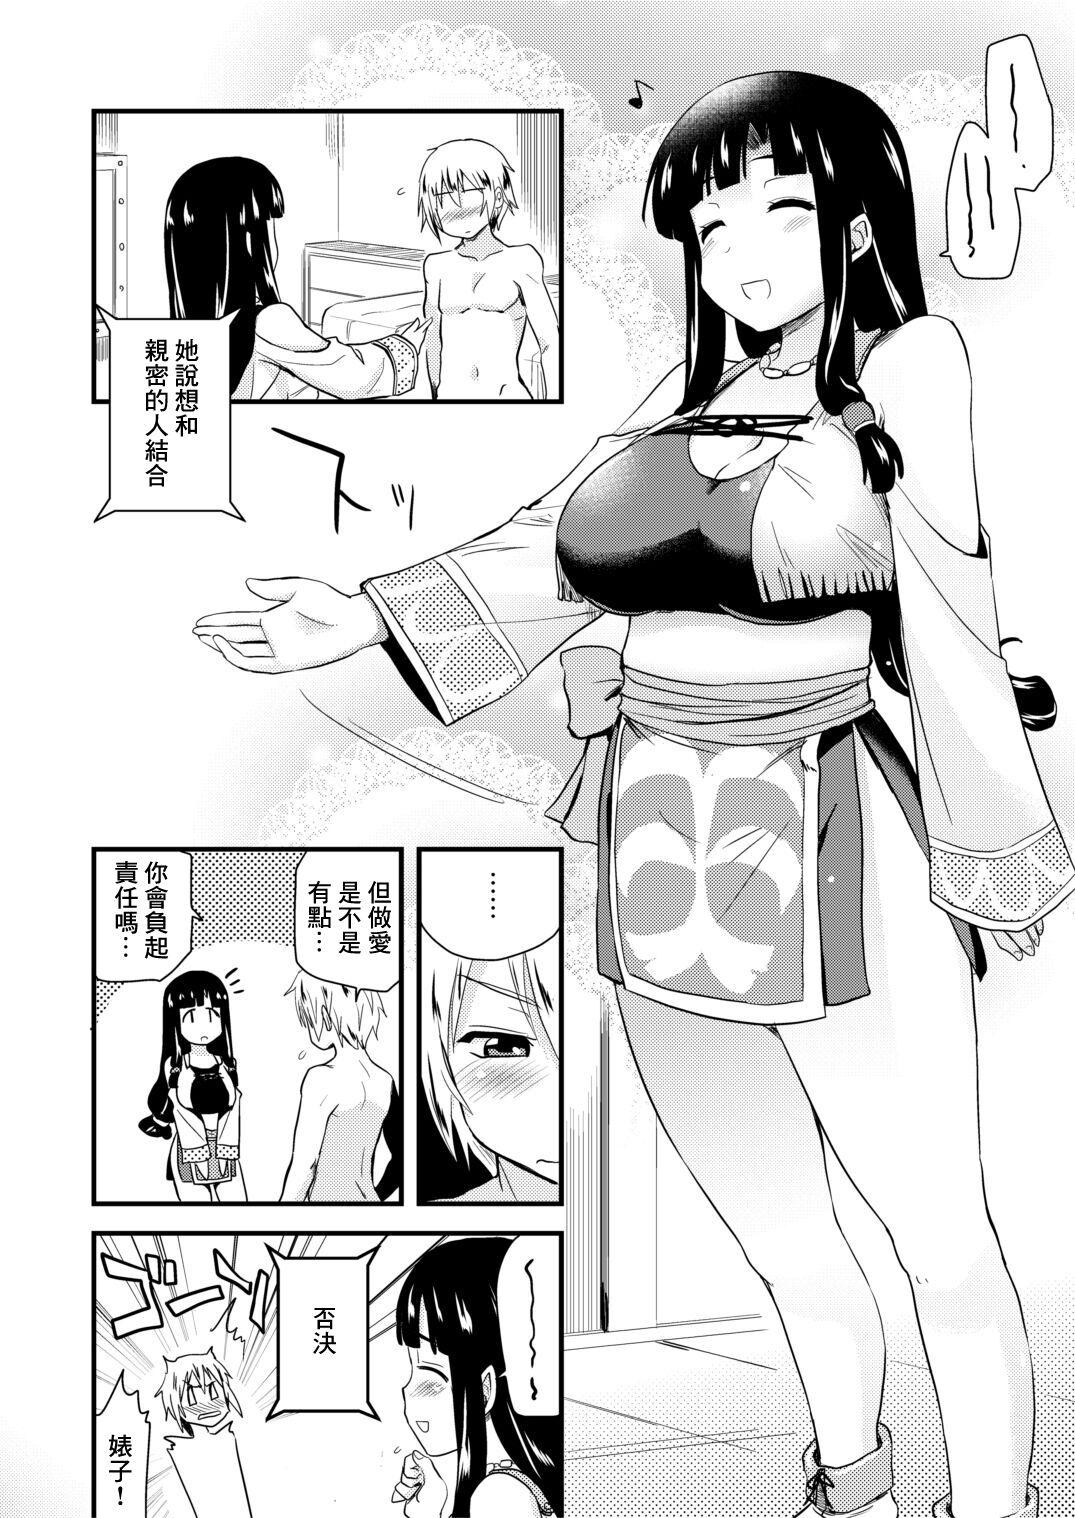 Sissy Muchimuchi Manga 14P Tiny - Page 2